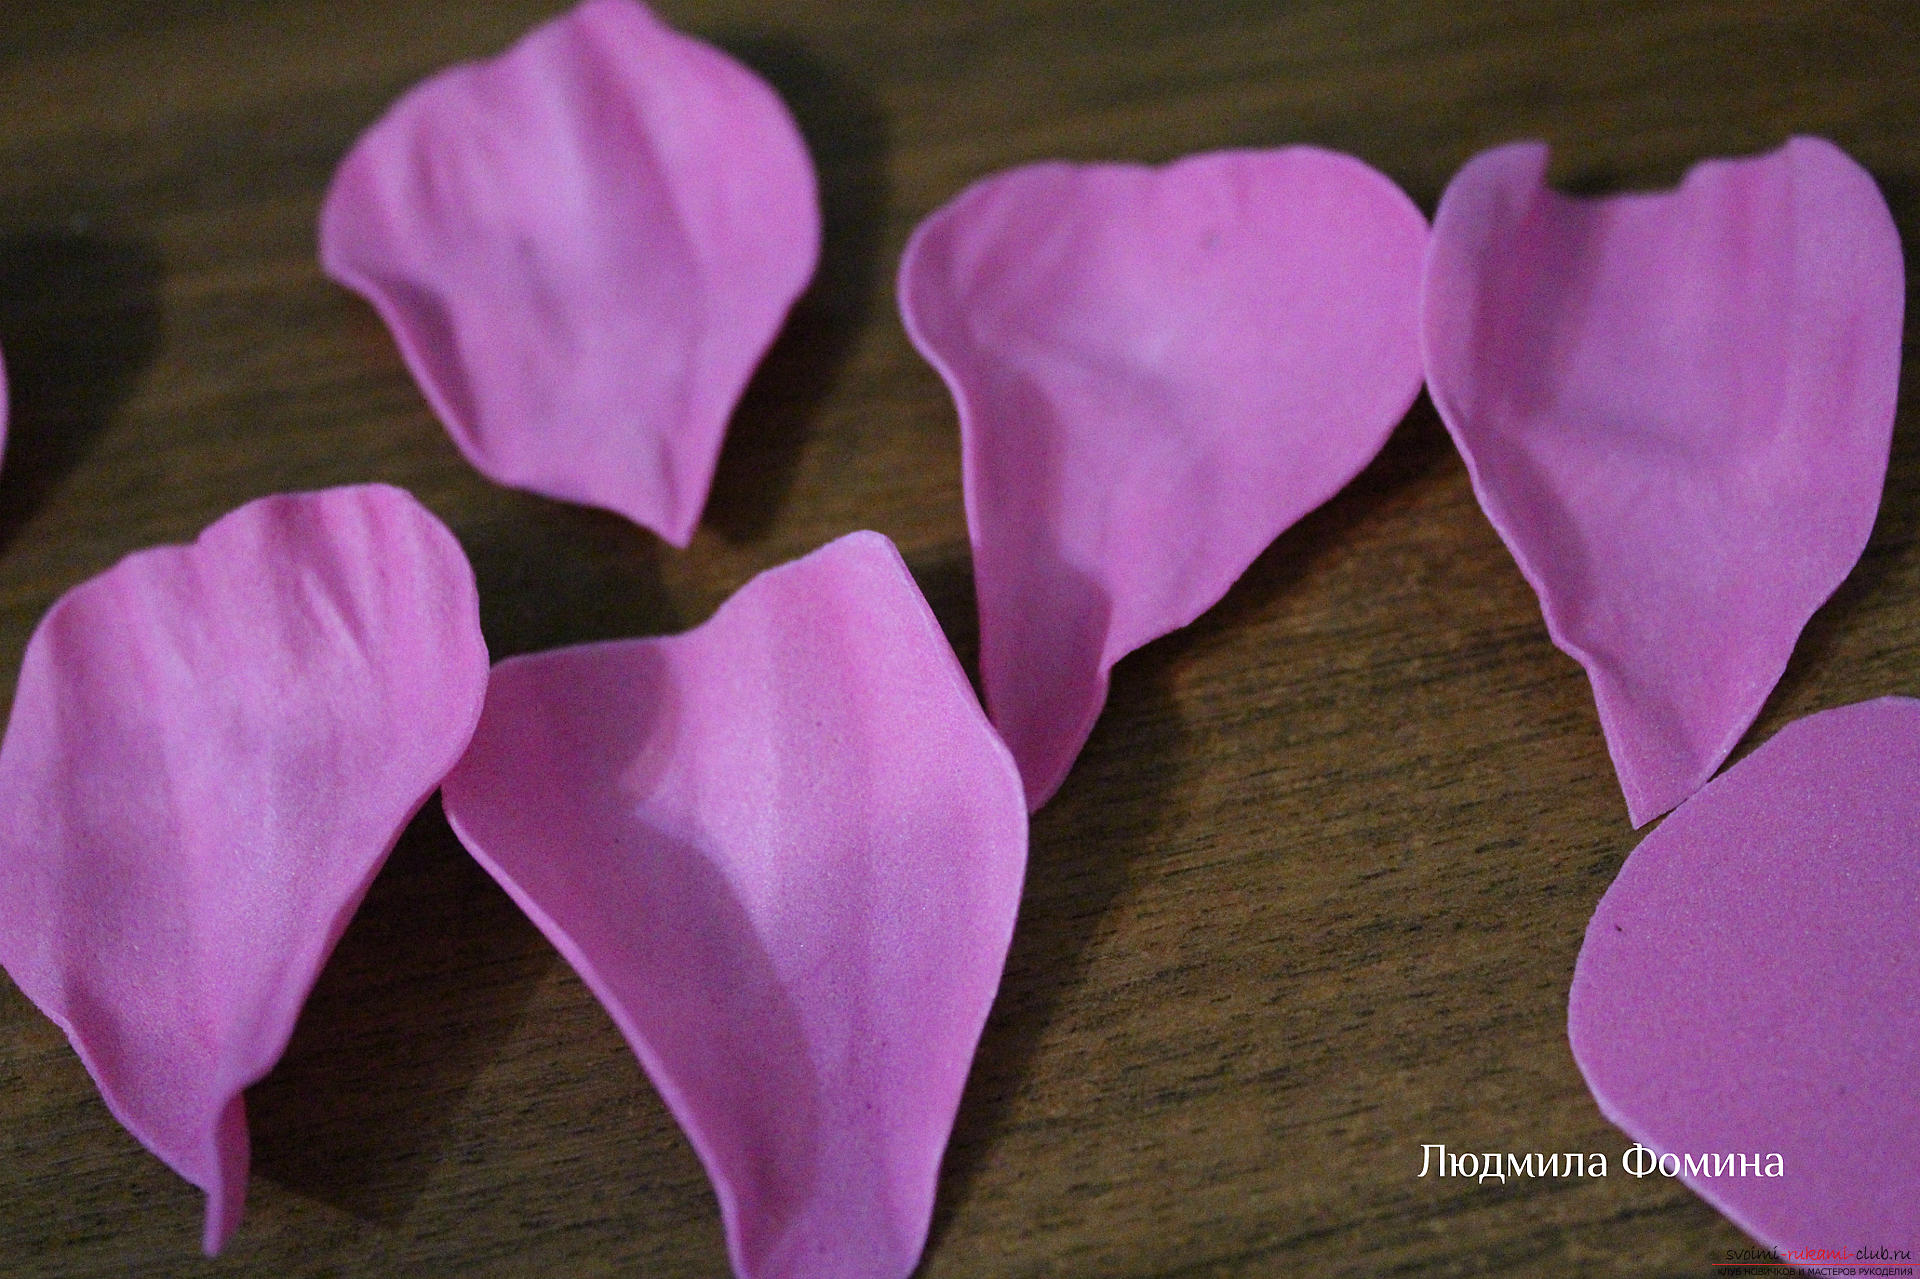 Мастер-класс по созданию цветов научит делать своими руками розу из фоамирана или из кожи. Фото №5